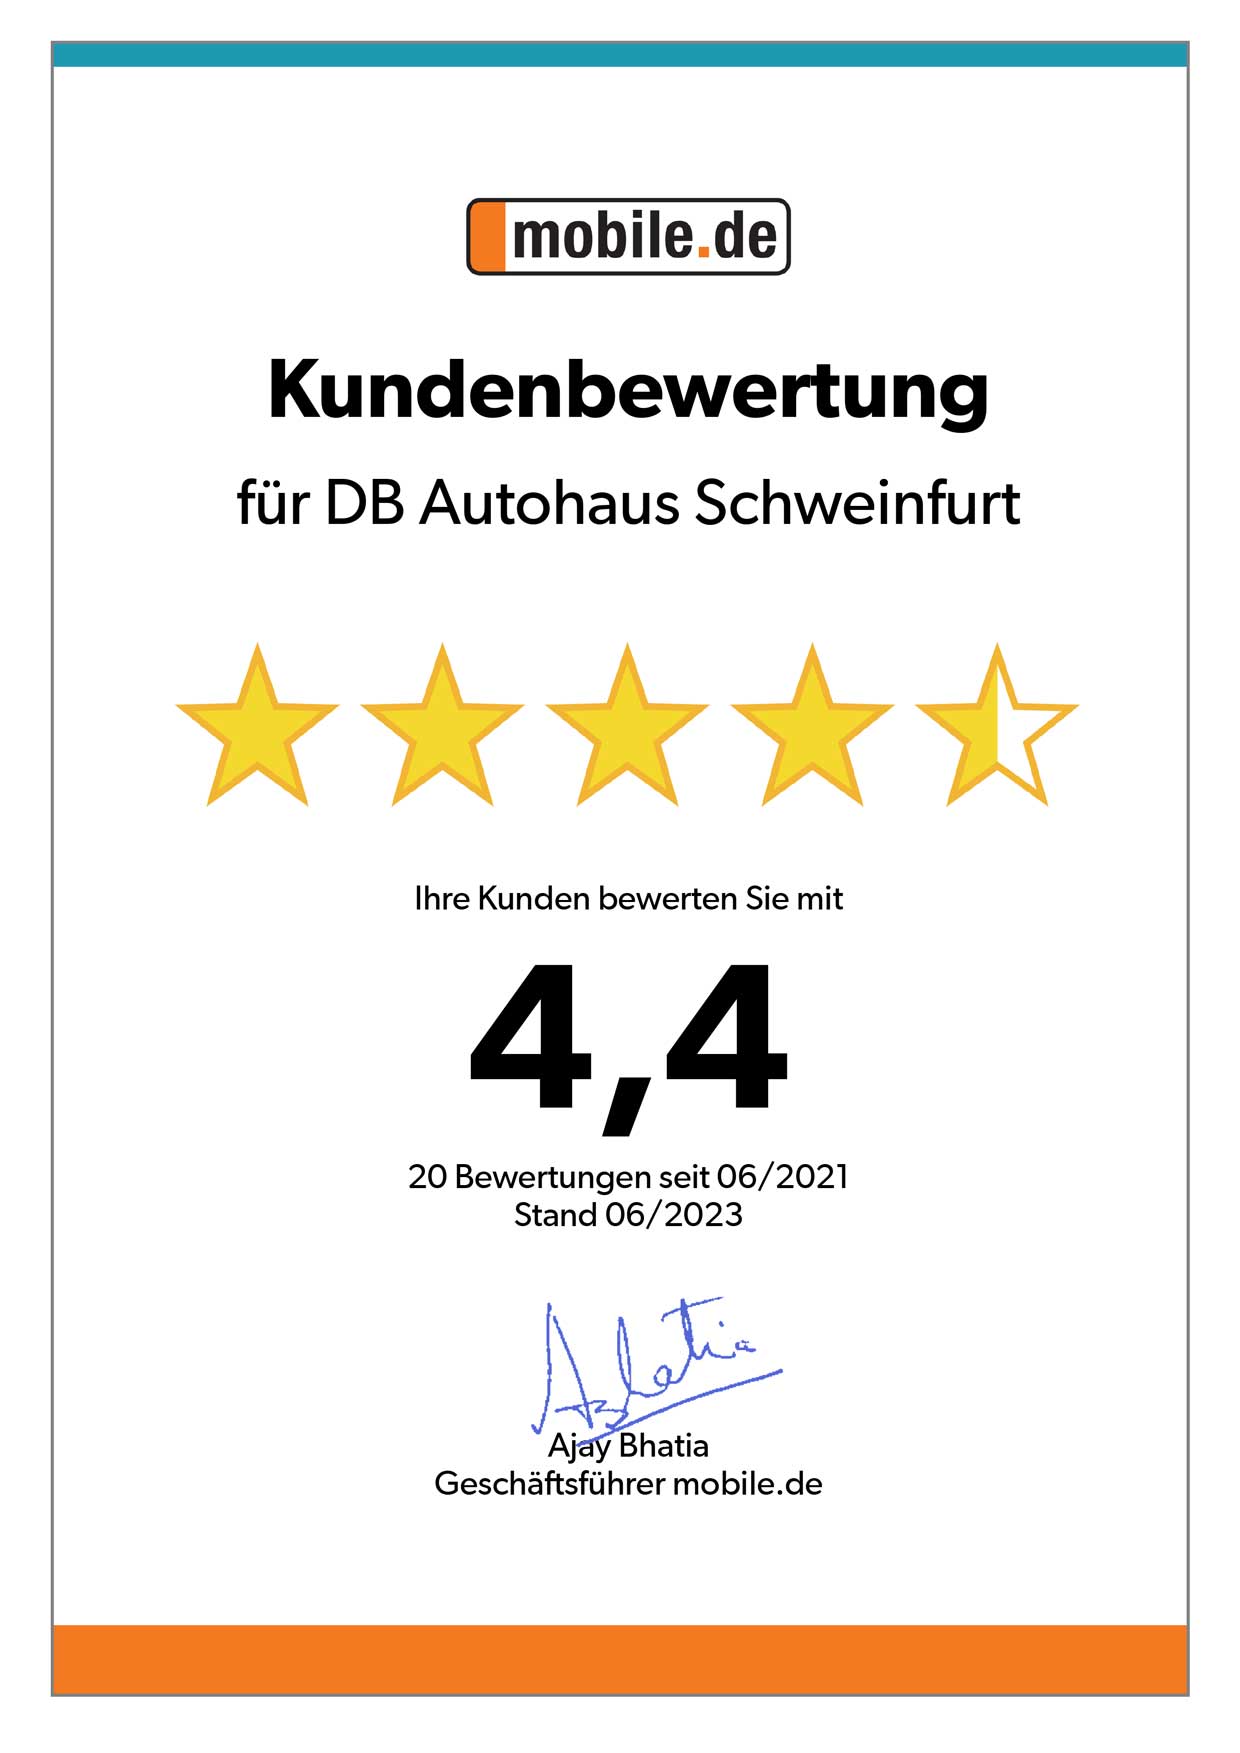 Auszeichnung von mobile.de für DB Autohaus Schweinfurt